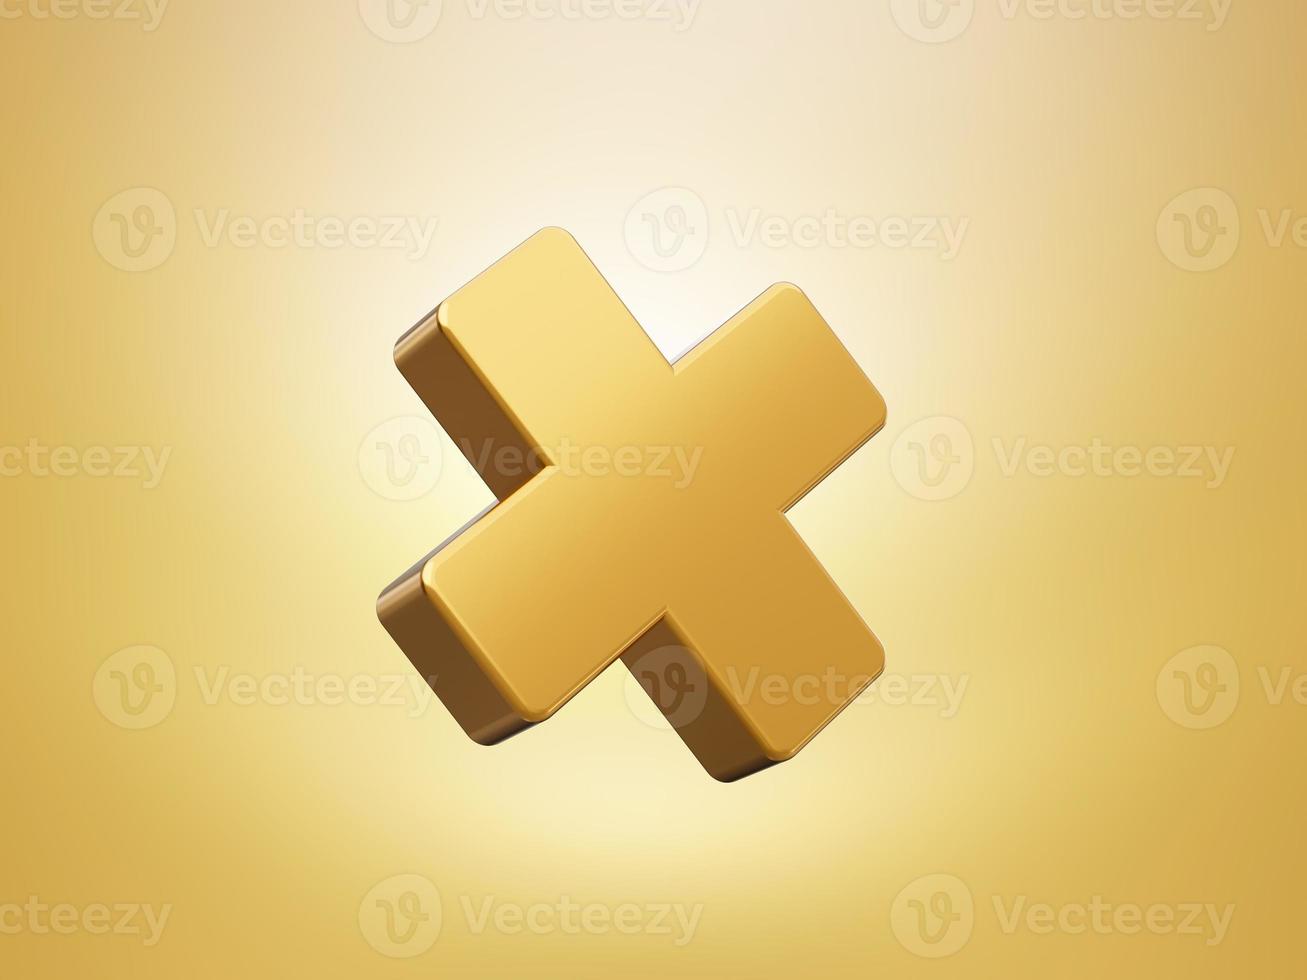 oro matemático múltiples símbolos estilo 3d. objetos aislados sobre fondo blanco ilustración 3d foto